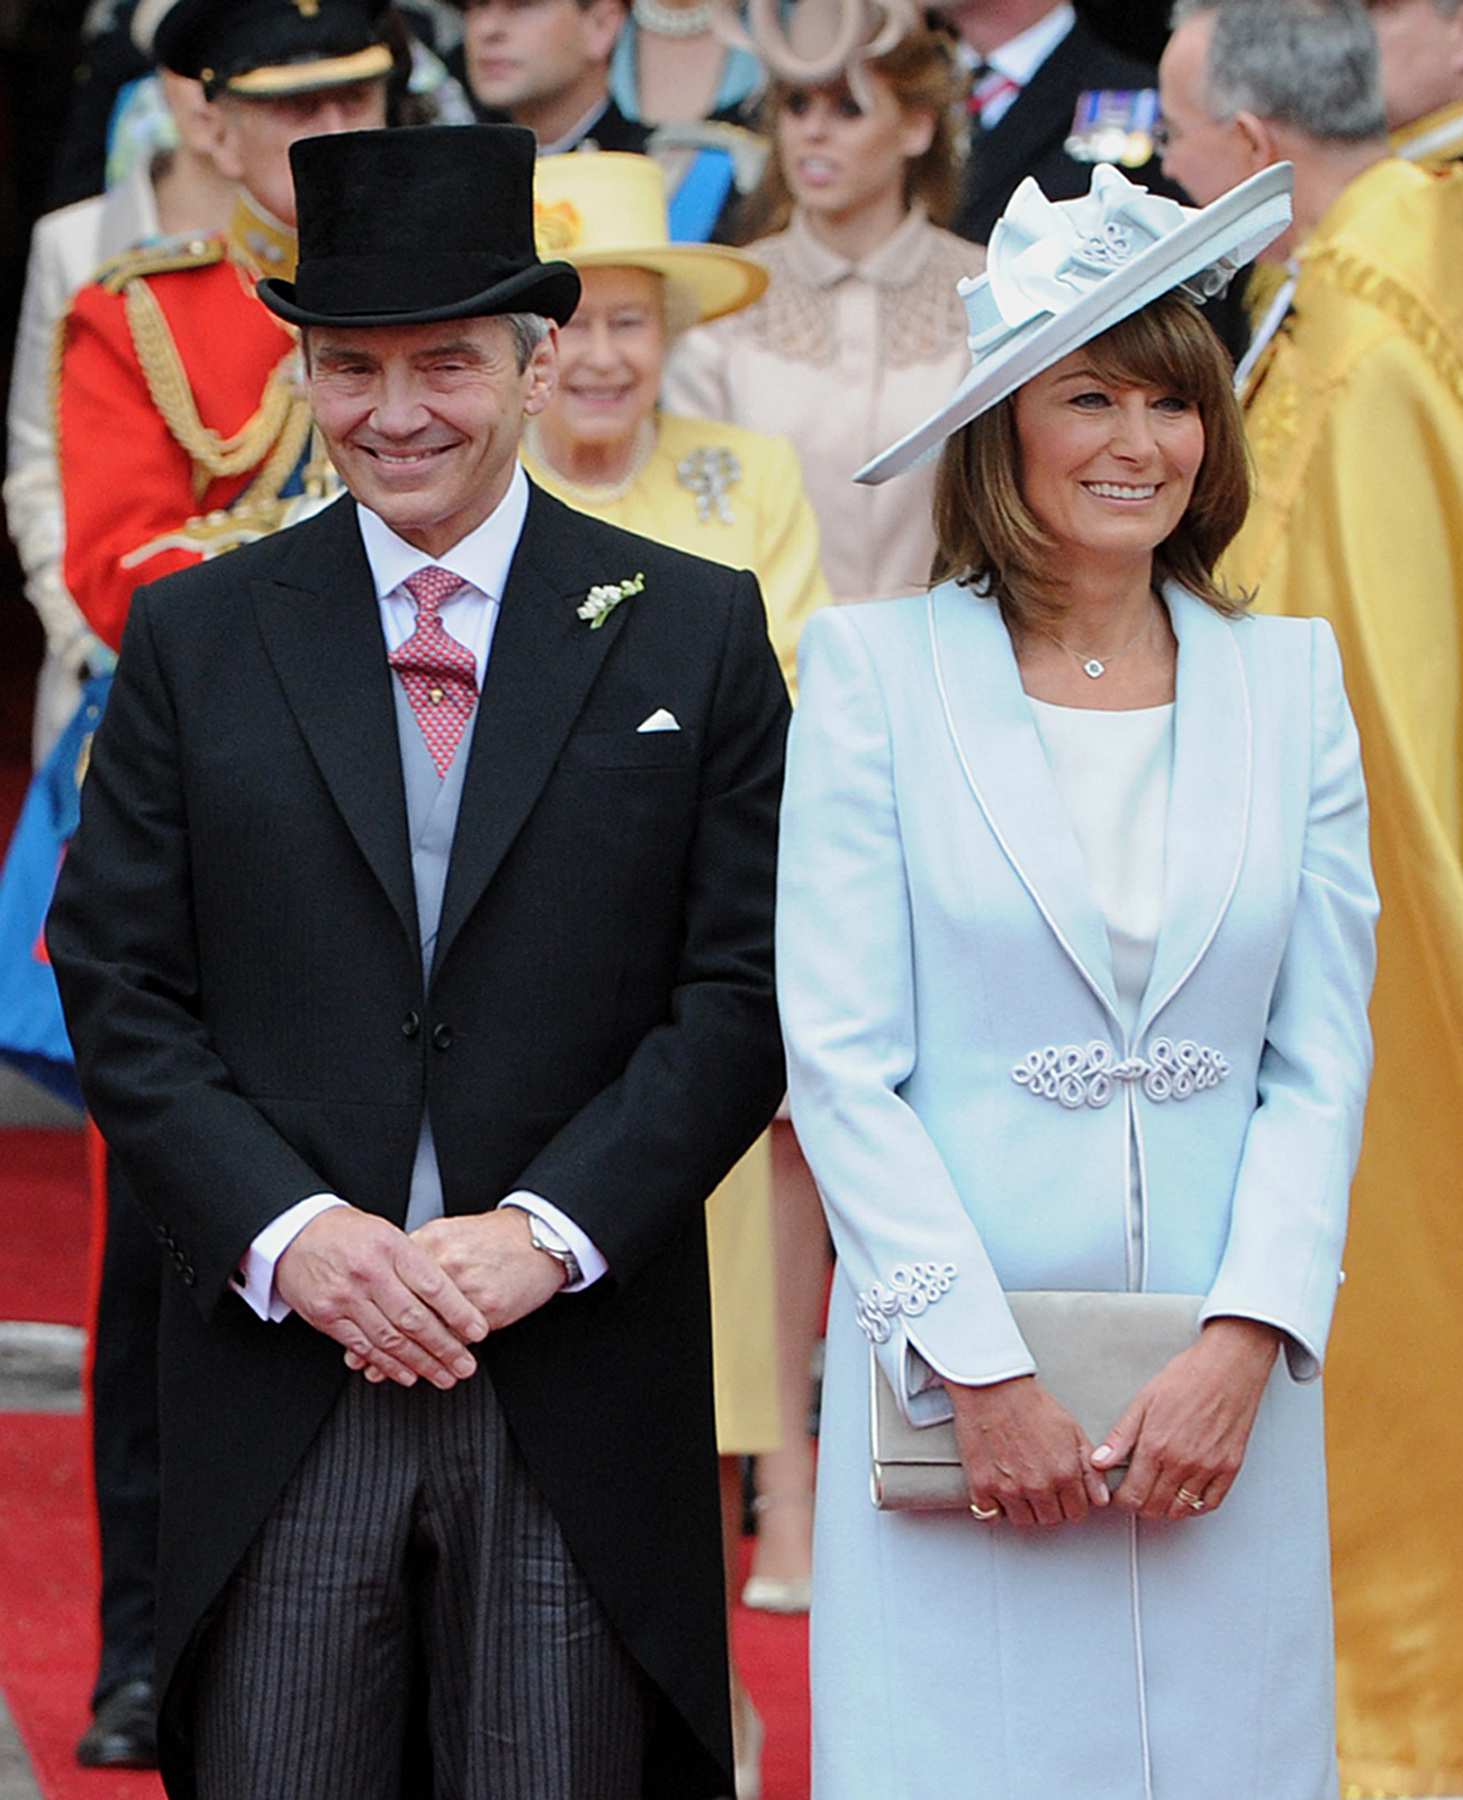 Michael y Carole Middleton salen de la Abadía de Westminster en Londres, tras la ceremonia de boda del príncipe William de Gran Bretaña y su hija, el 29 de abril de 2011. | Foto: Getty Images